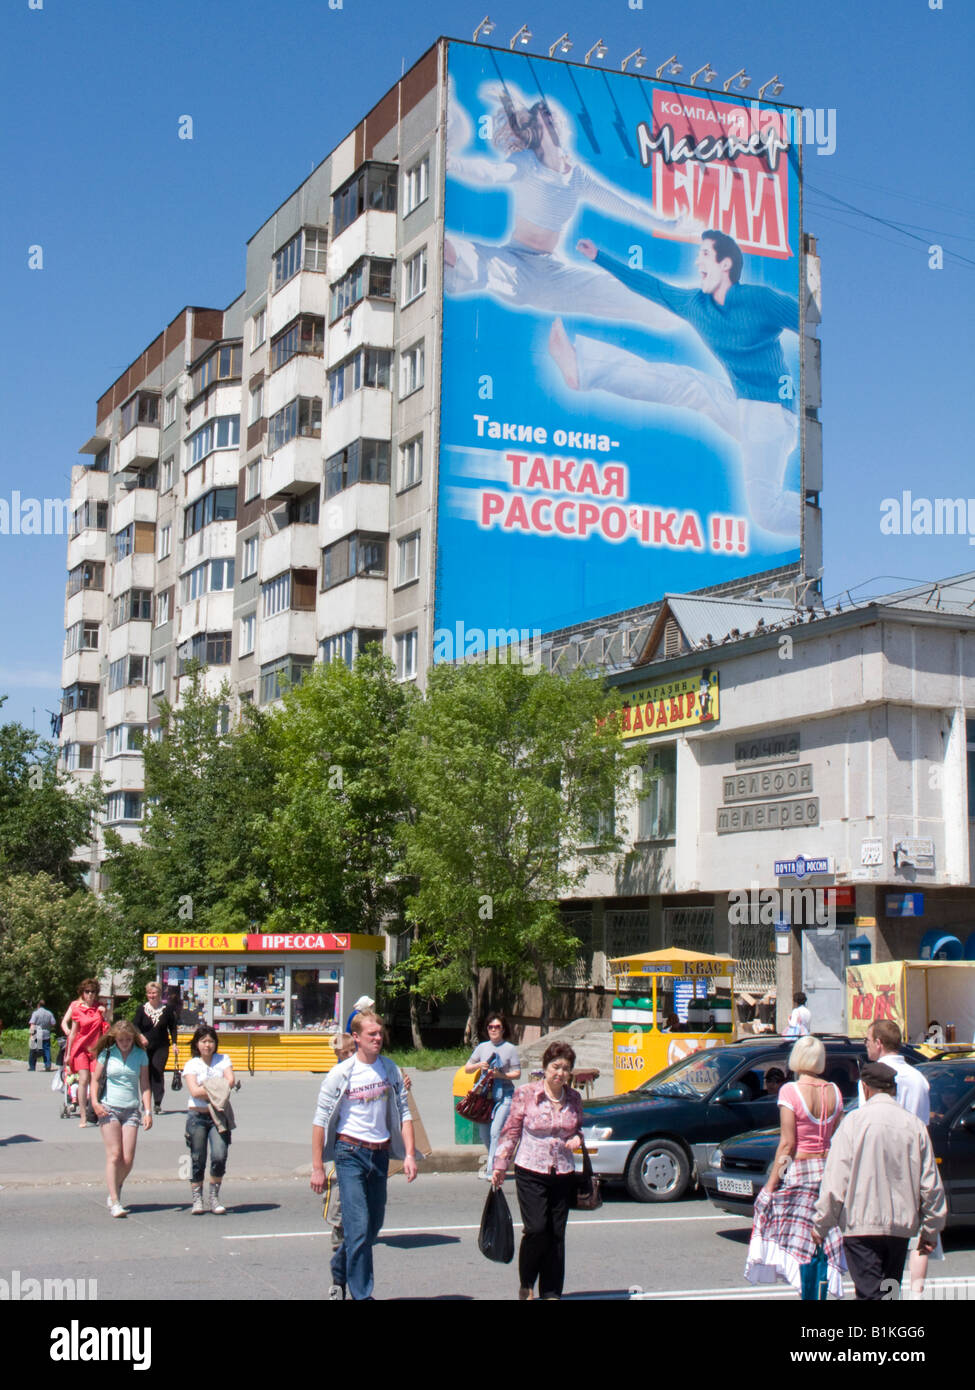 Il contrasto del moderno e grande cartellone pubblicitario sul vecchio era sovietica un blocco di appartamenti in Yuzhno Sakhalinsk Sakhalin in Russia 2008 Foto Stock